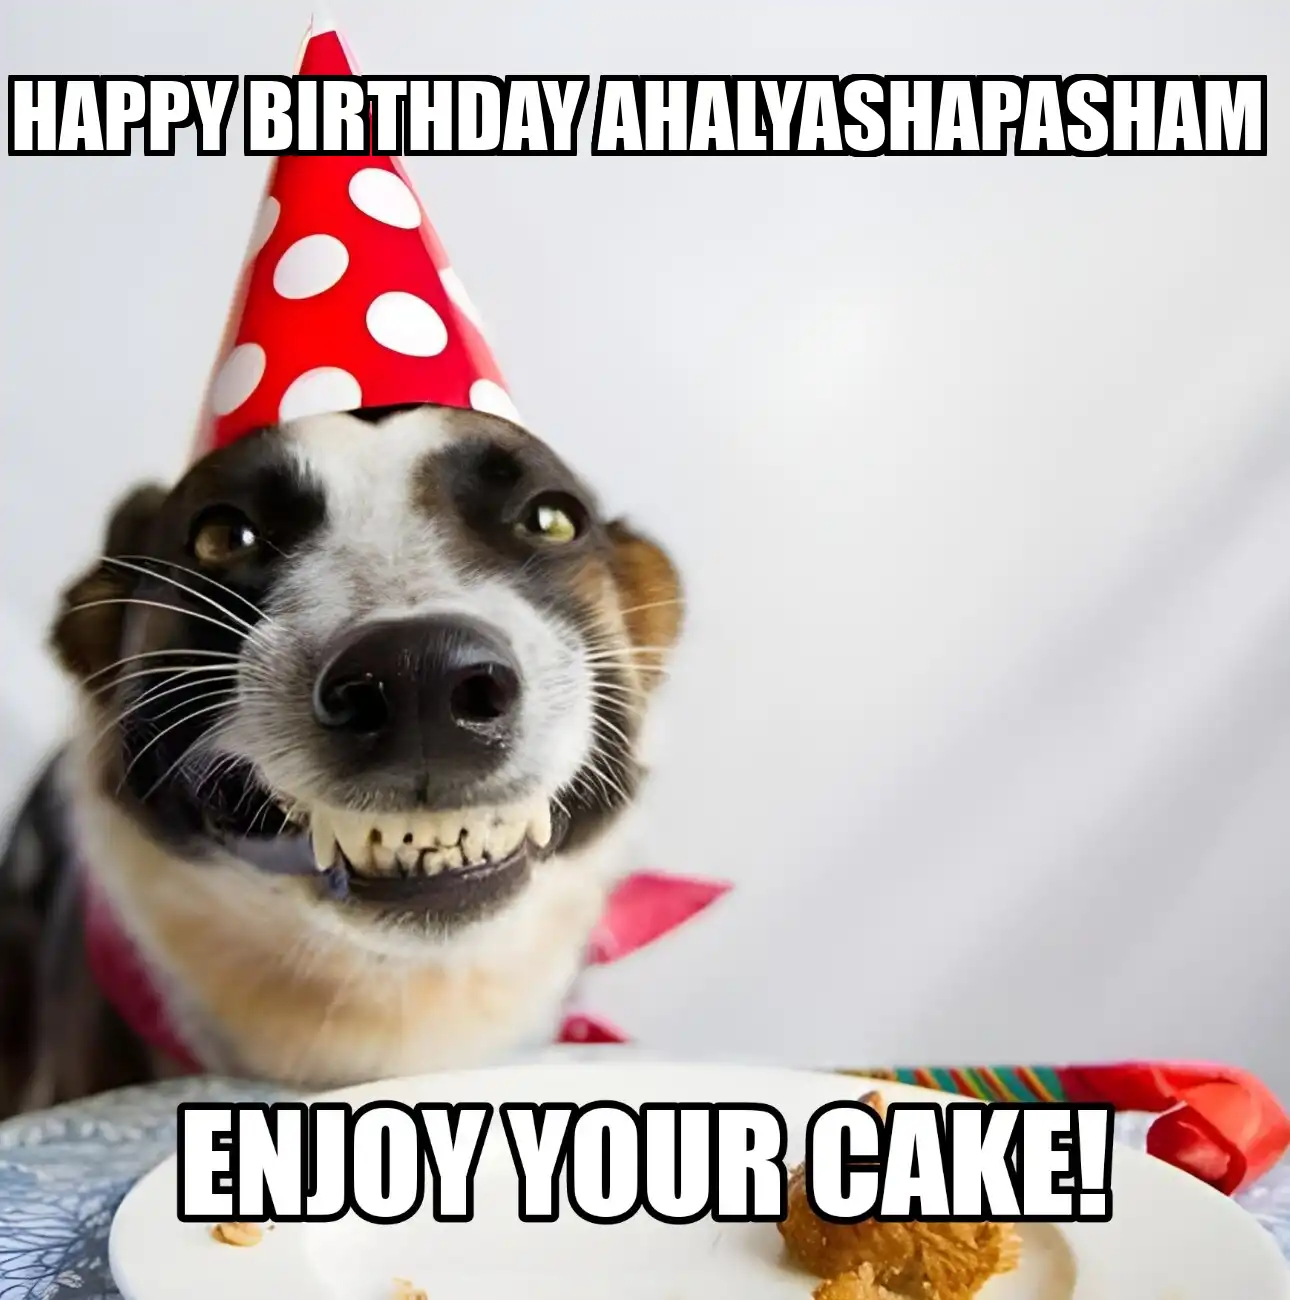 Happy Birthday Ahalyashapasham Enjoy Your Cake Dog Meme